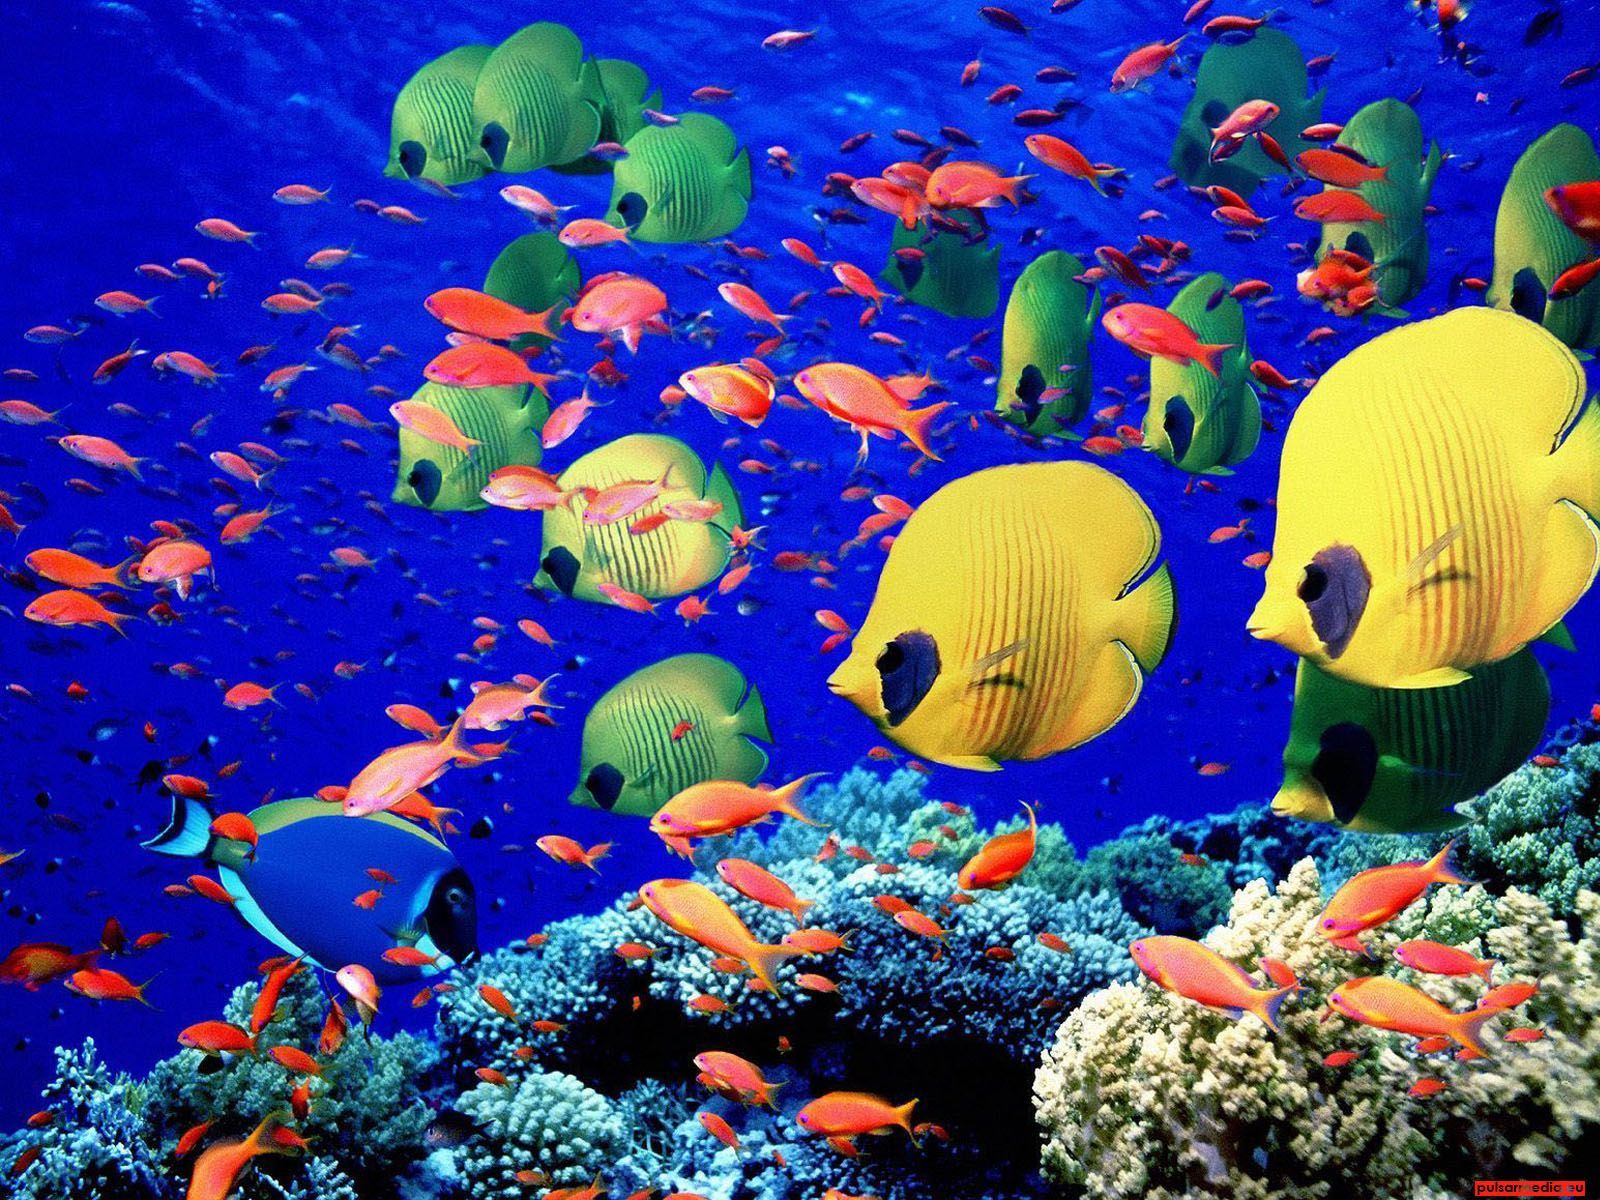 Aquarium 2 Ocean Life 1600x1200 Deluxe Wallpaper. Ocean animals, Sea life wallpaper, Tropical fish